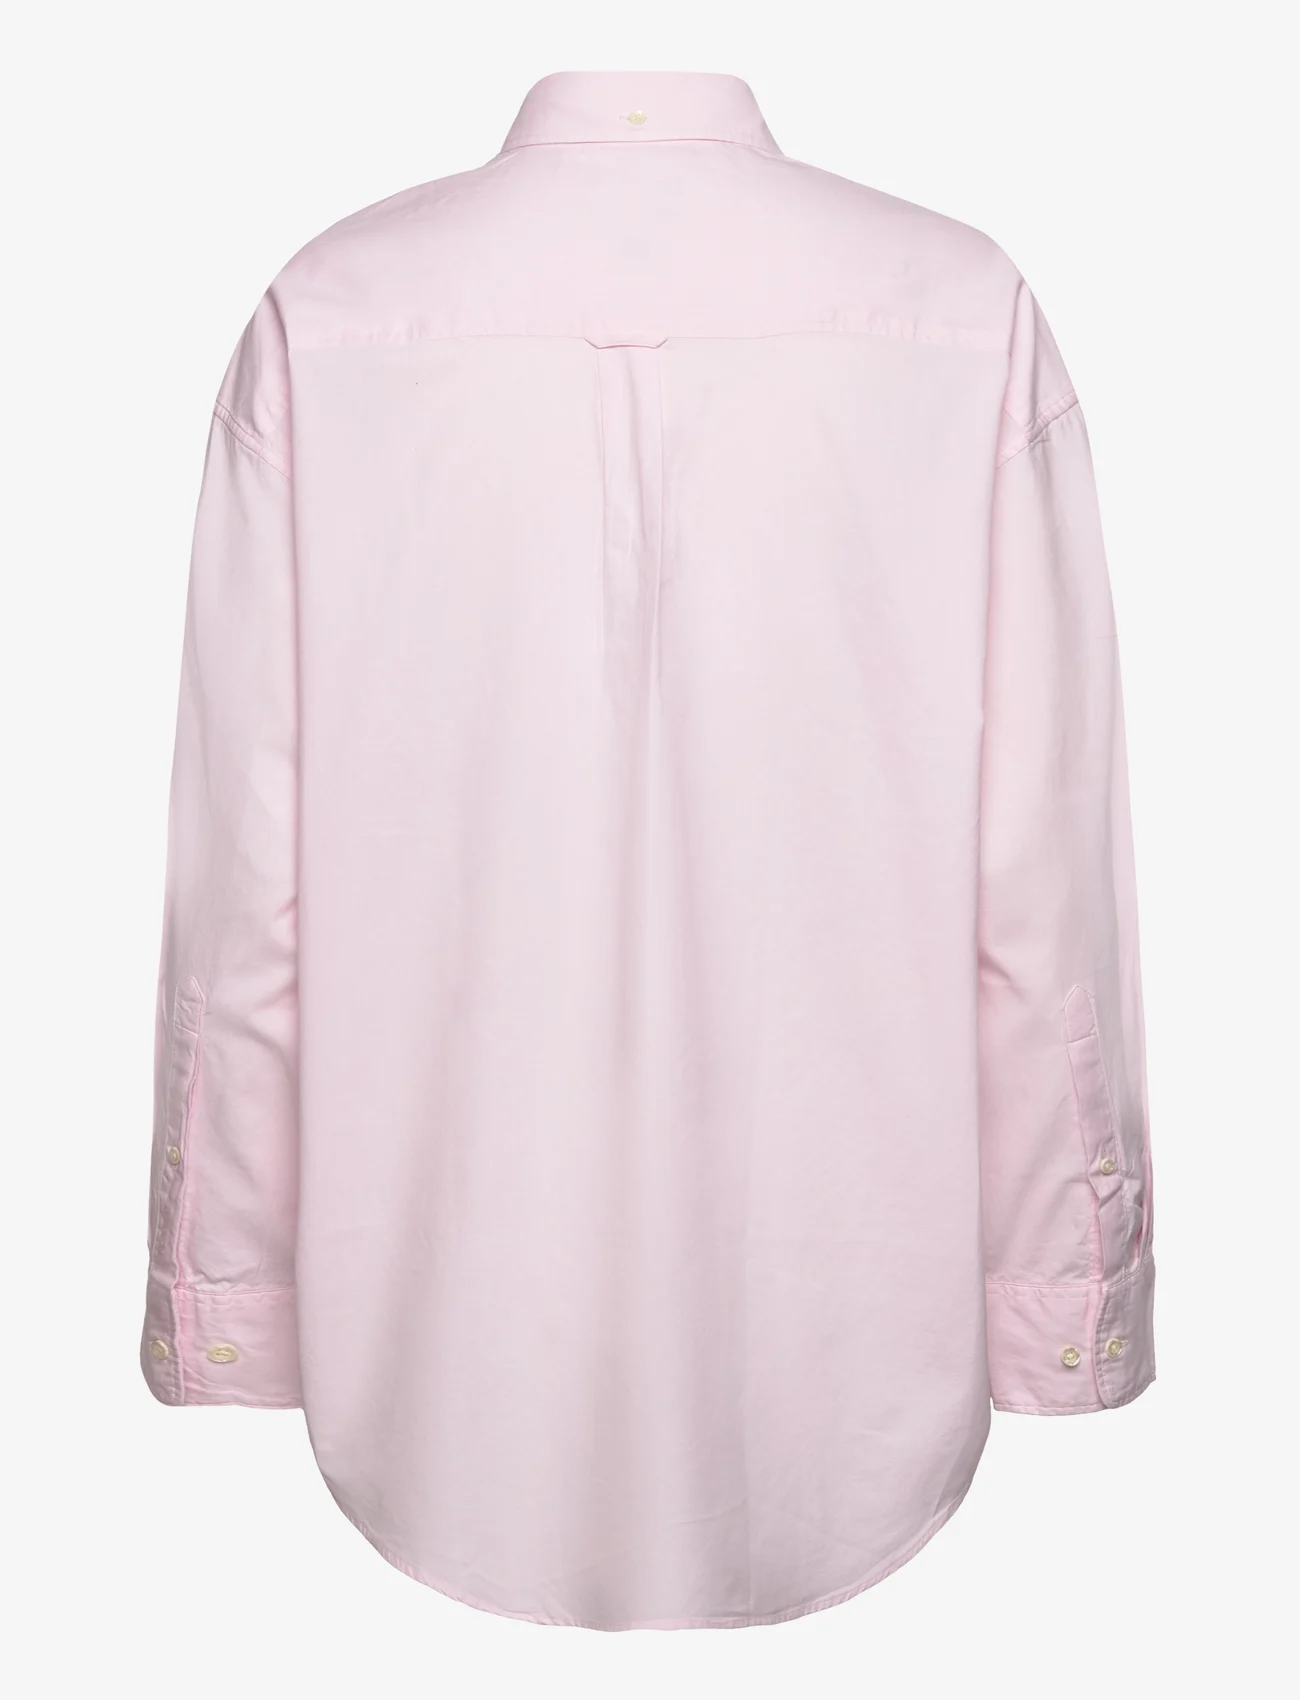 GANT - OS LUXURY OXFORD BD SHIRT - marškiniai ilgomis rankovėmis - light pink - 1